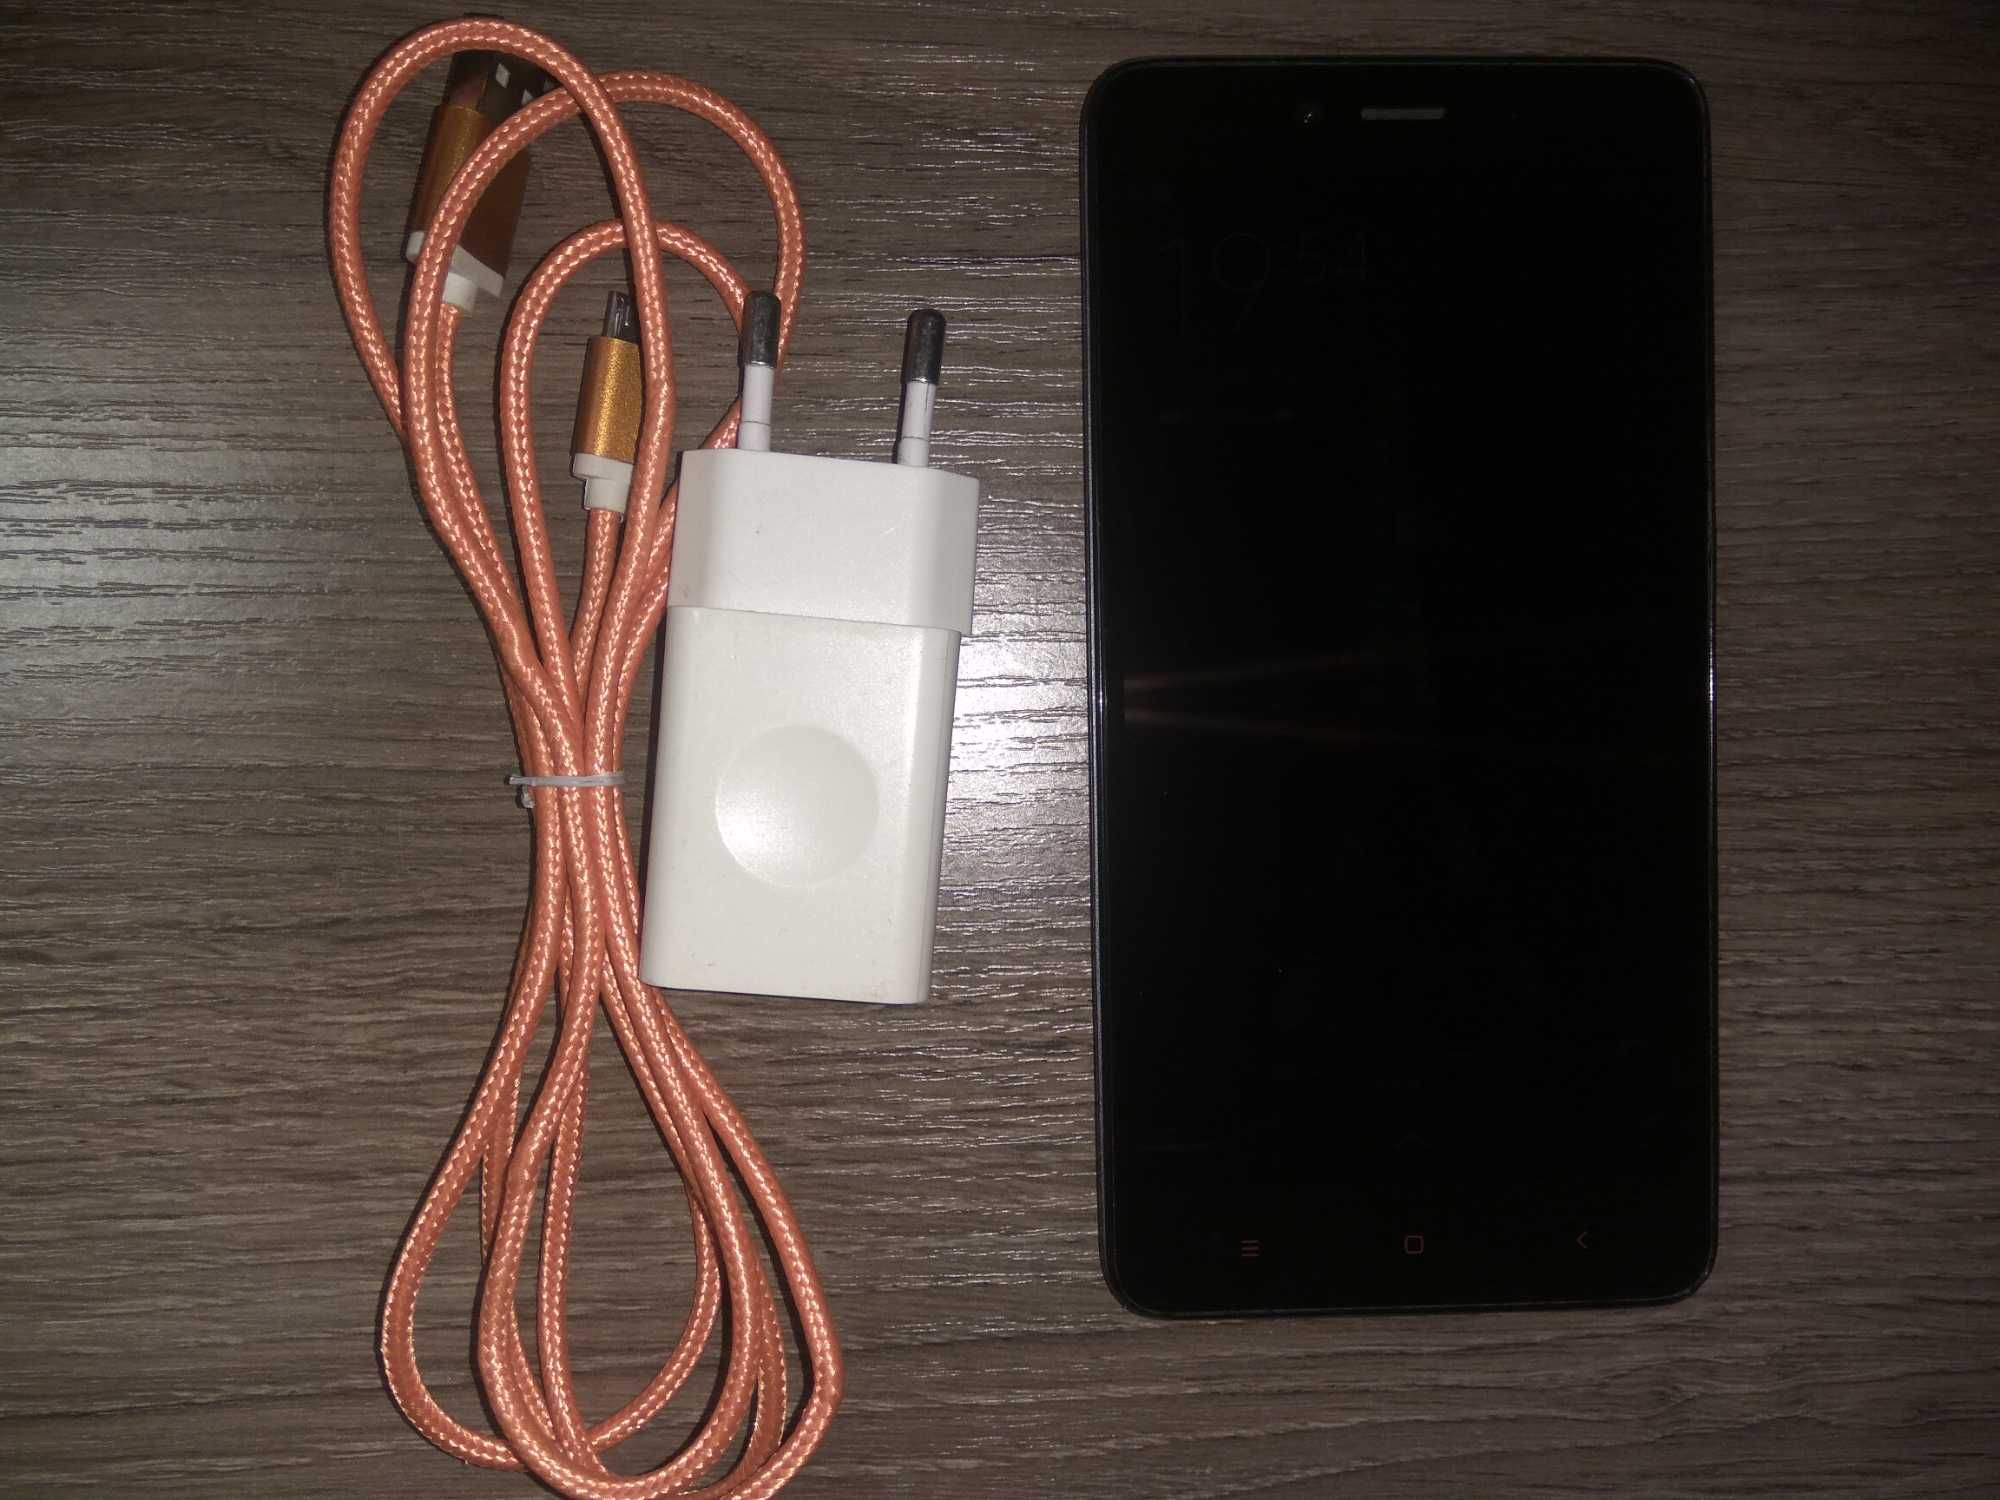 ASUS Z010DA (5000mA) и Xiaomi Redmi Note 2  2/16